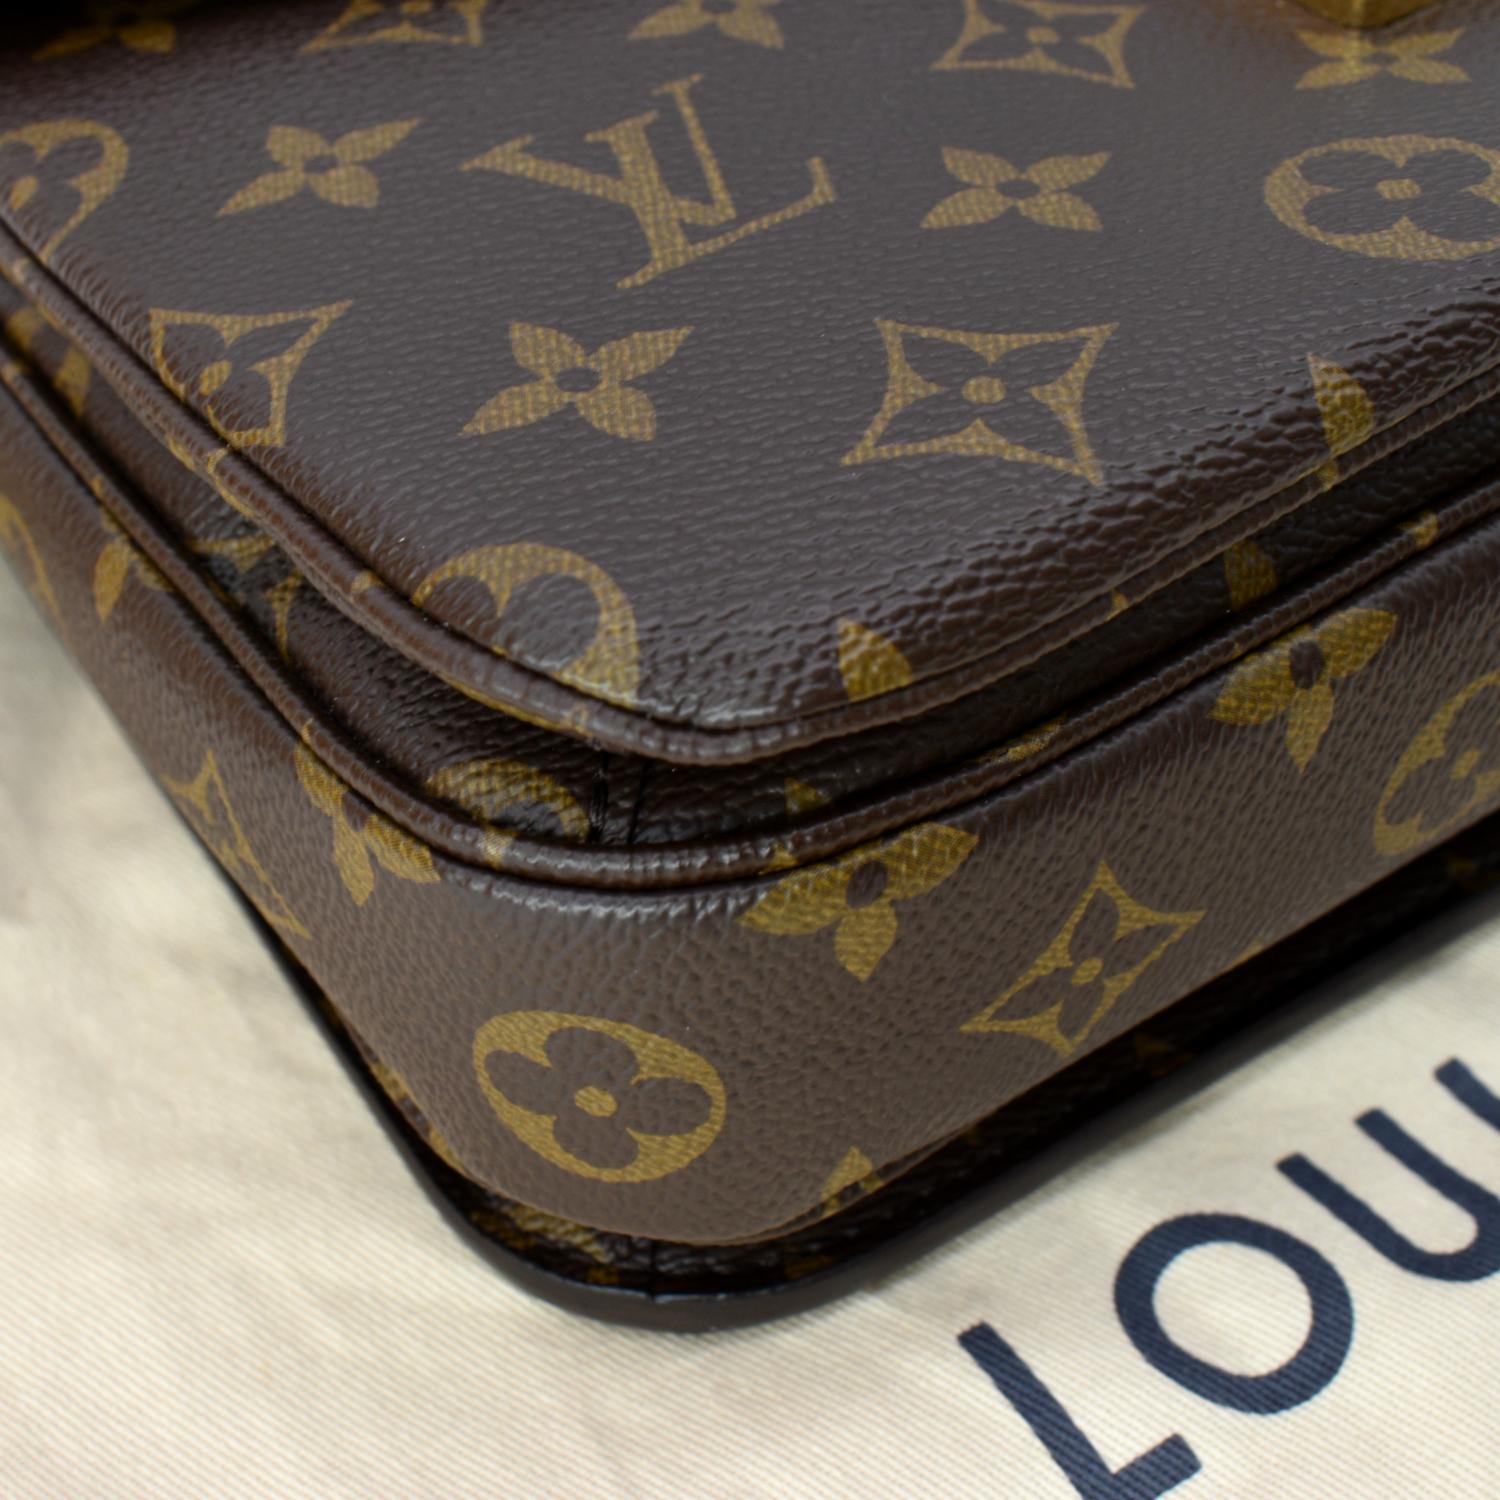 Louis Vuitton Pochette Metis 2WAY Bag 14145 Brown Ladies Handbag